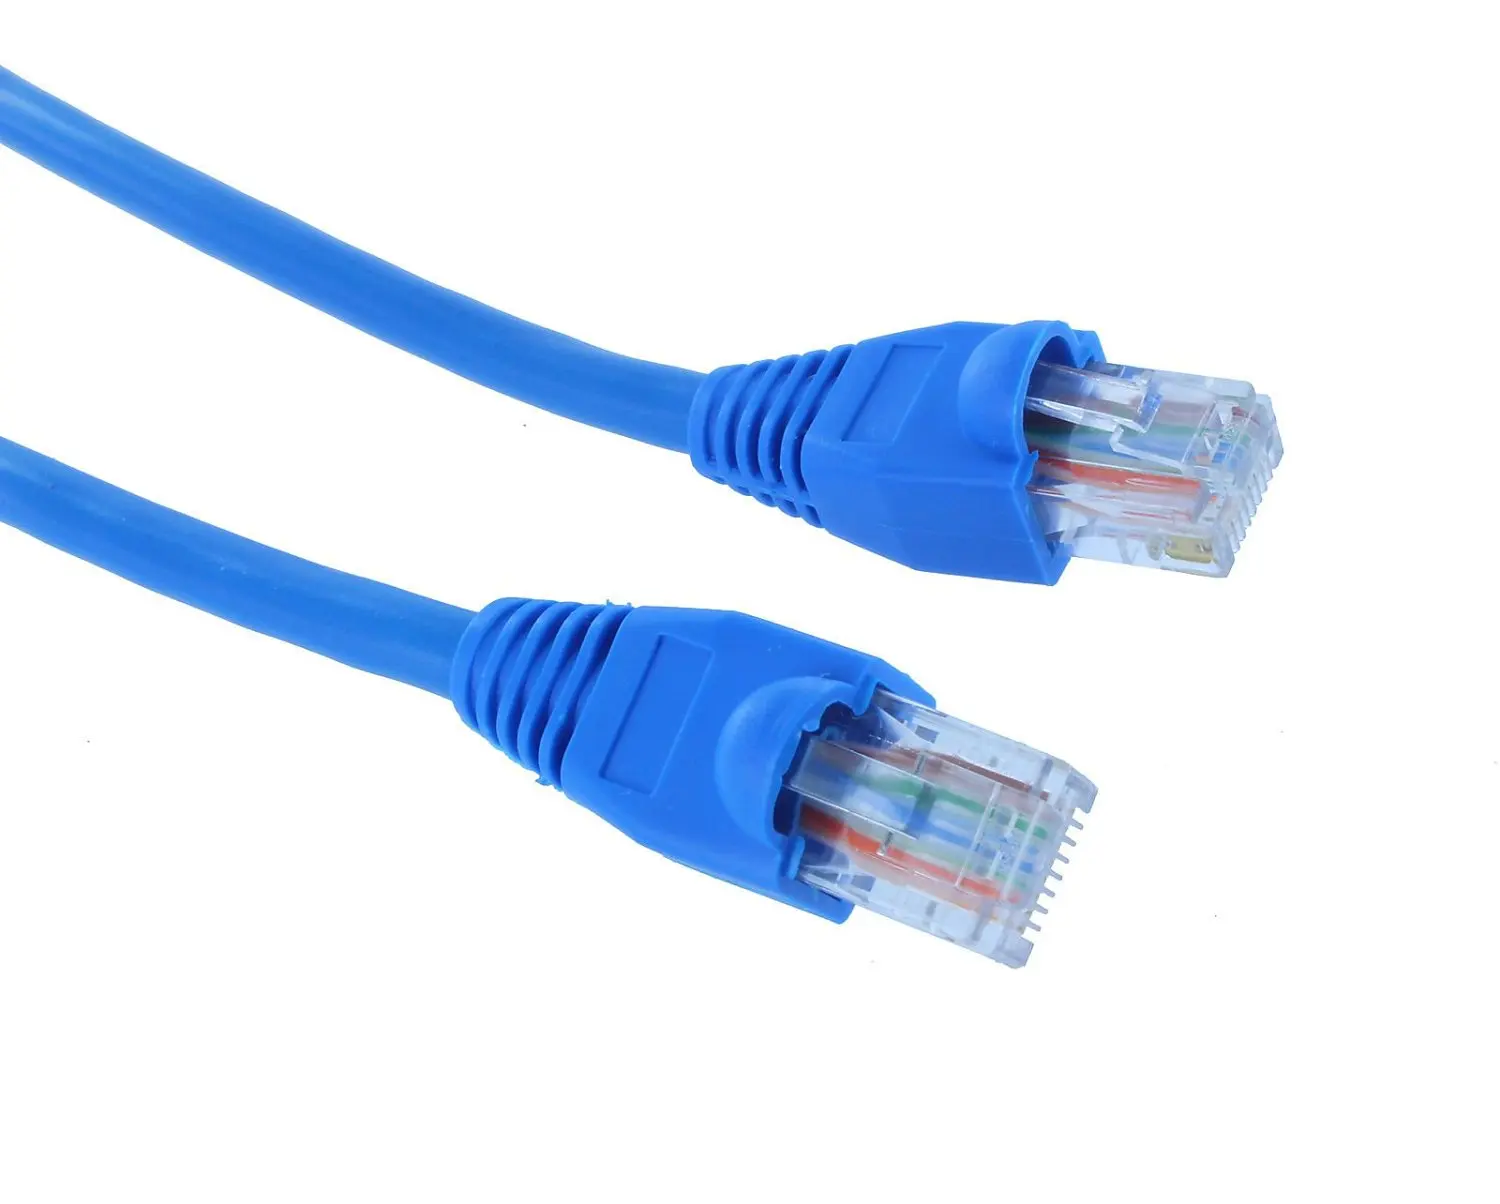 Сетевой кабель lg. Ethernet Cat 6. Интернет кабель Cat 6. Сетевой кабель Cross-over rj45. Кабель соединительный a02590.